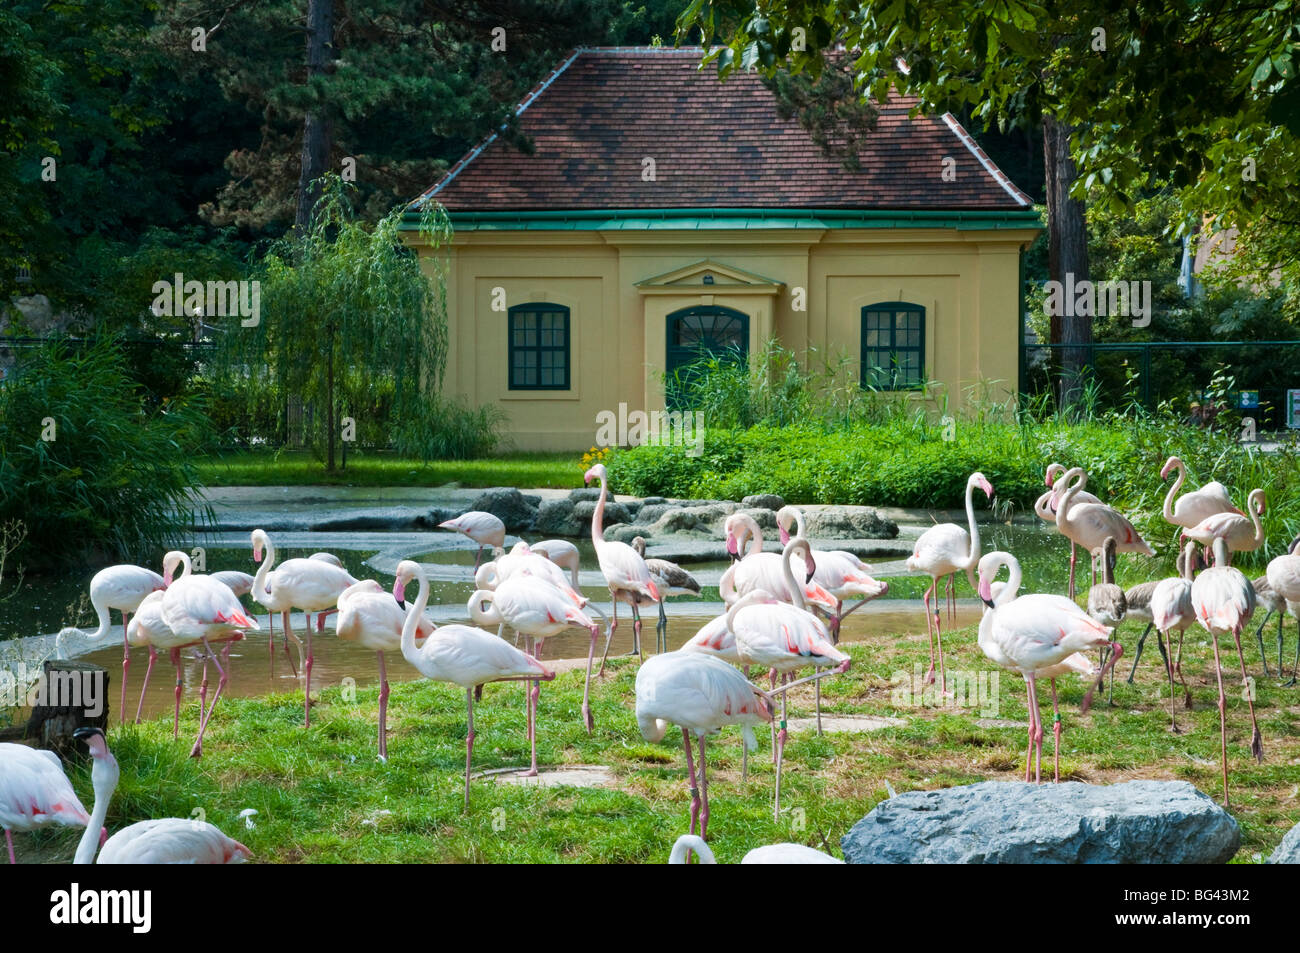 Flamingos, Tiergarten Schönbrunn, Wien, Österreich | flamingos, zoo Schönbrunn, Vienna, Austria  Stock Photo